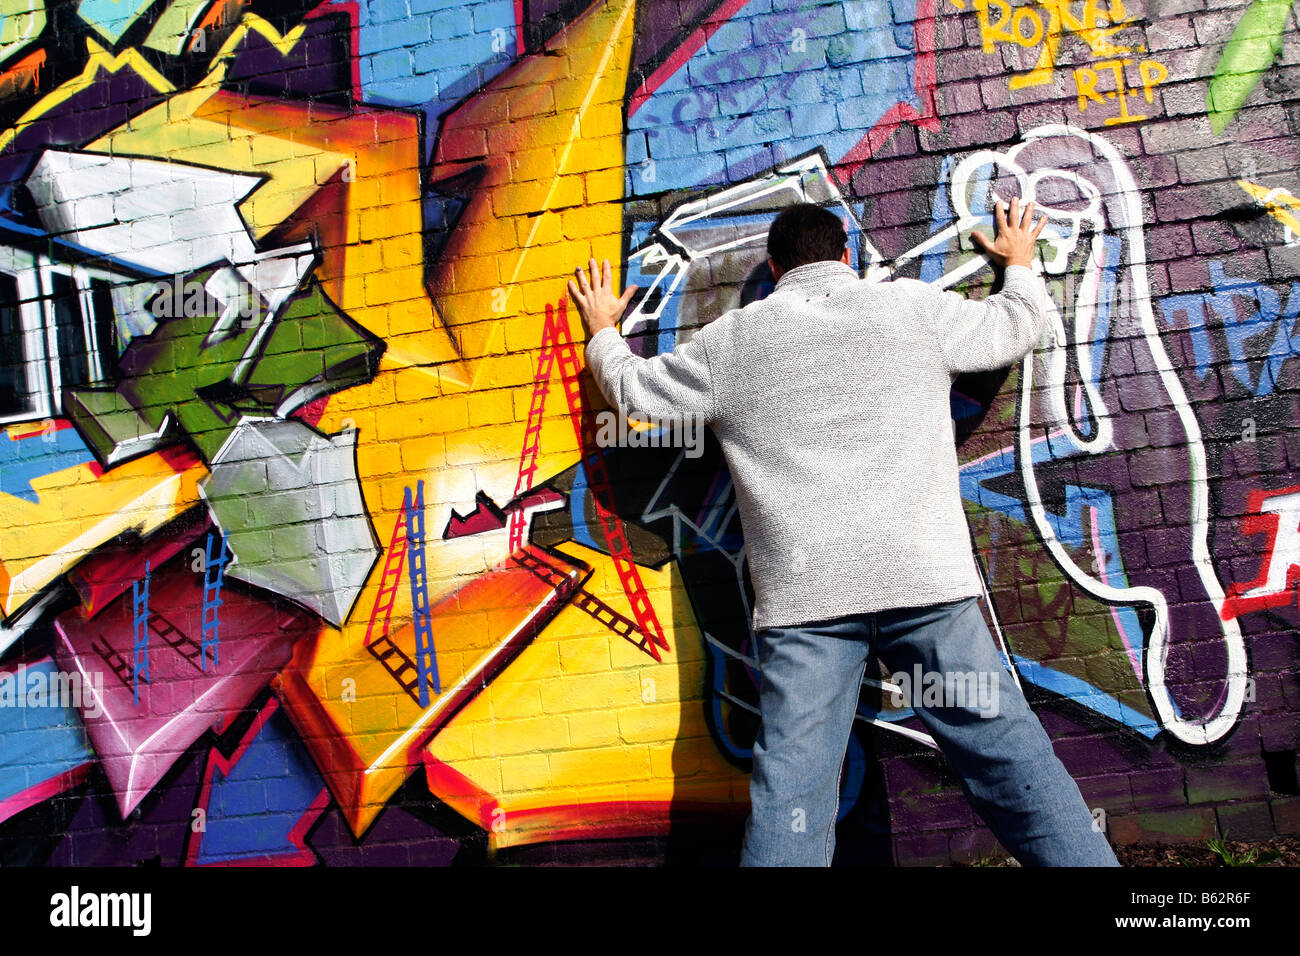 Homme debout contre et face à un mur qui a l'art du graffiti sur le mur de brique de pulvérisation de peinture graffiti art peinture Banque D'Images